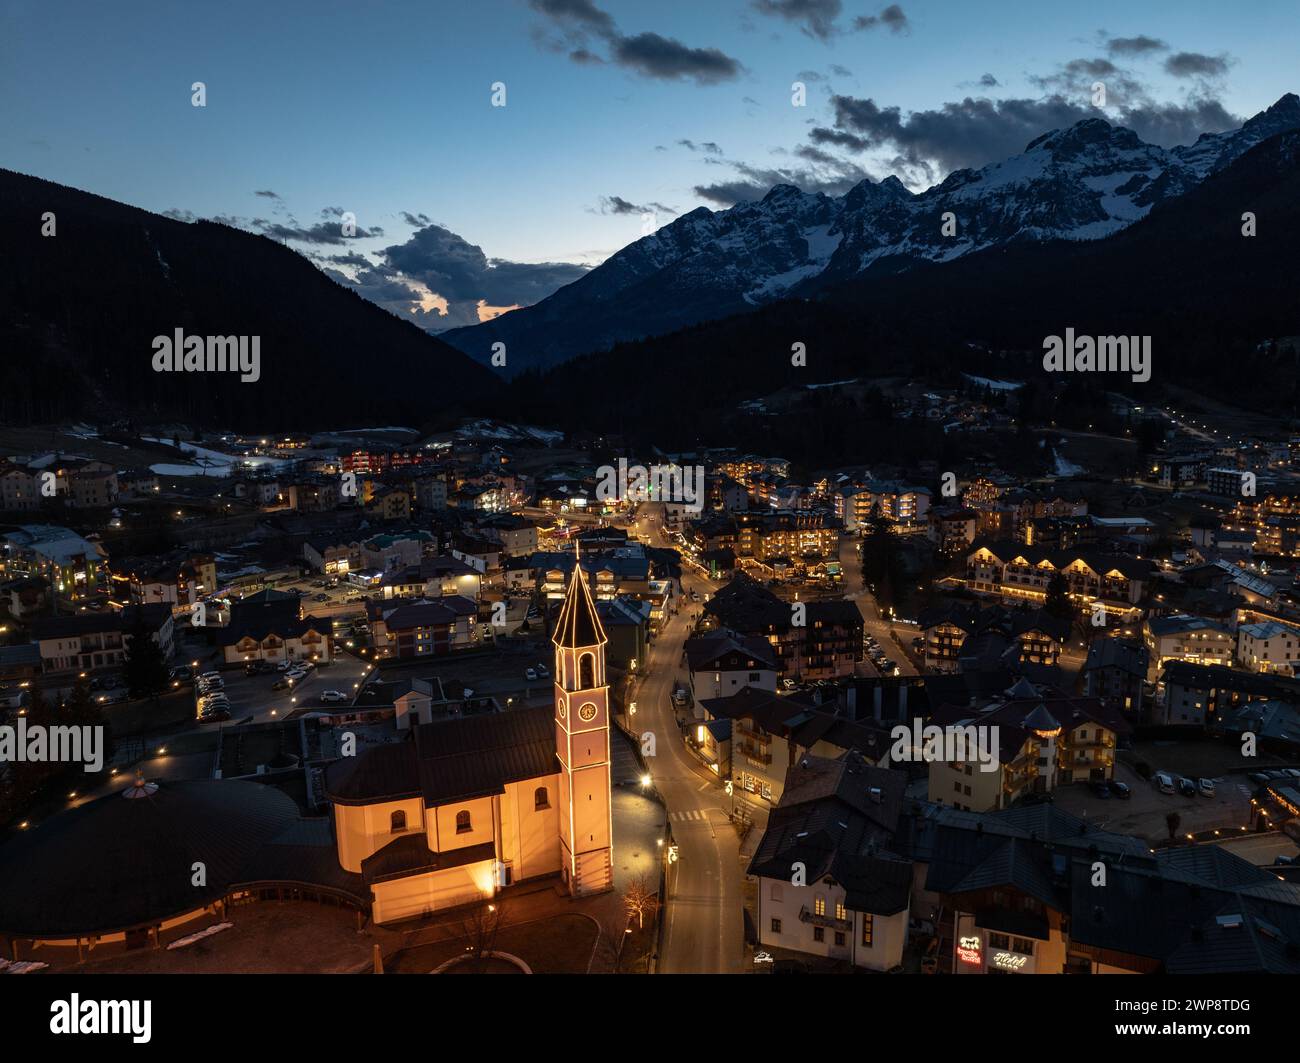 Vista aerea notturna della città di Andalo con droni e montagne sullo sfondo in inverno. Località sciistica Paganella Andalo, Trentino-alto Adige, Italia Foto Stock